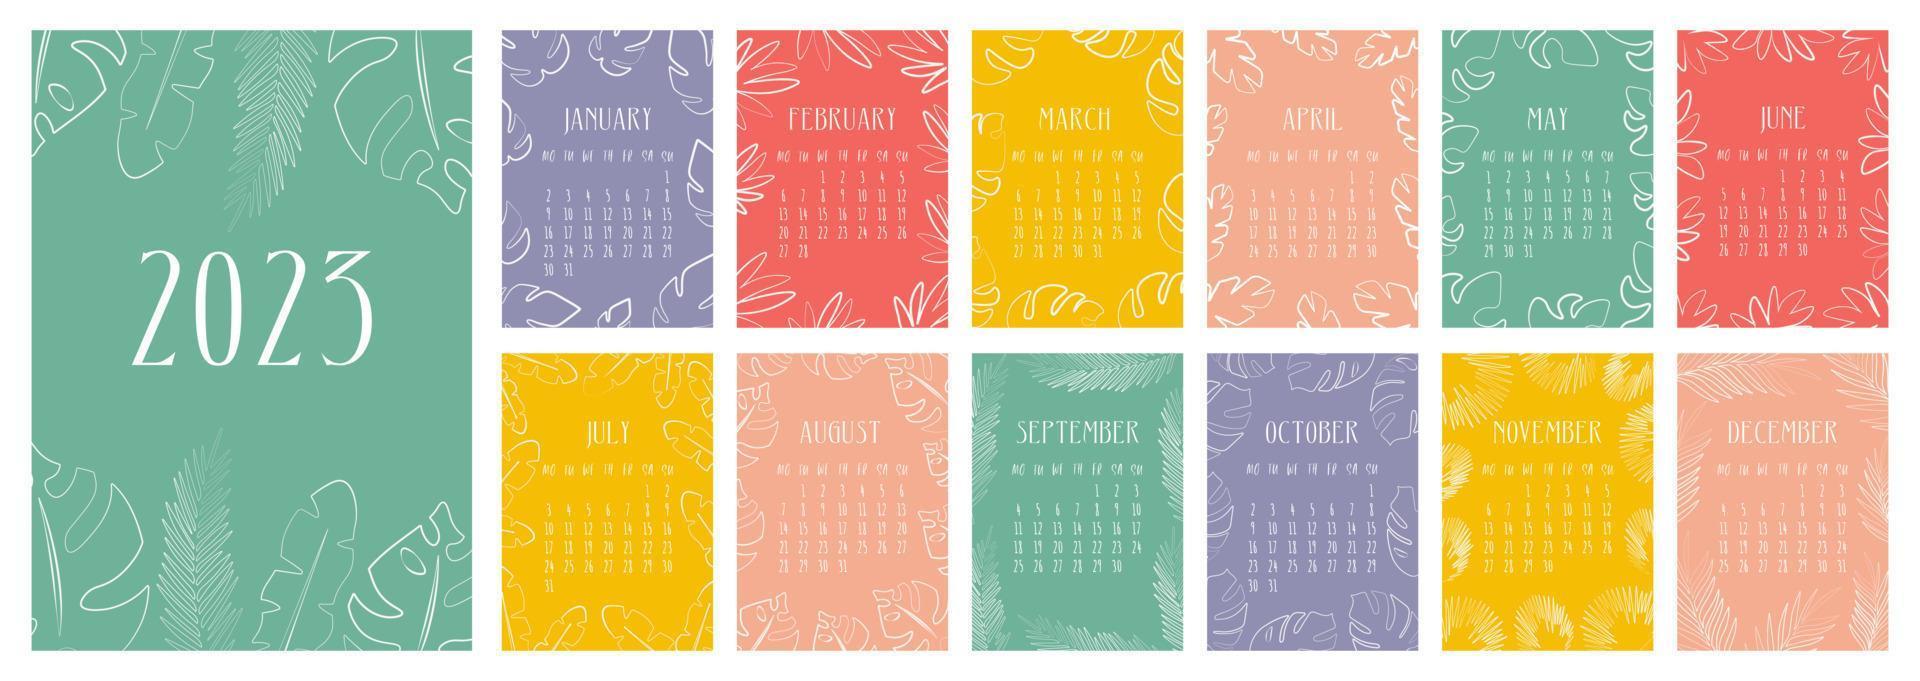 vektor kalender för 2023. omslag och 12 månader sidor ljus med tropisk och handflatan löv. designad i trendig minimalistisk abstrakt stil. en modern kalender för de kontor, arrangör eller för en gåva.